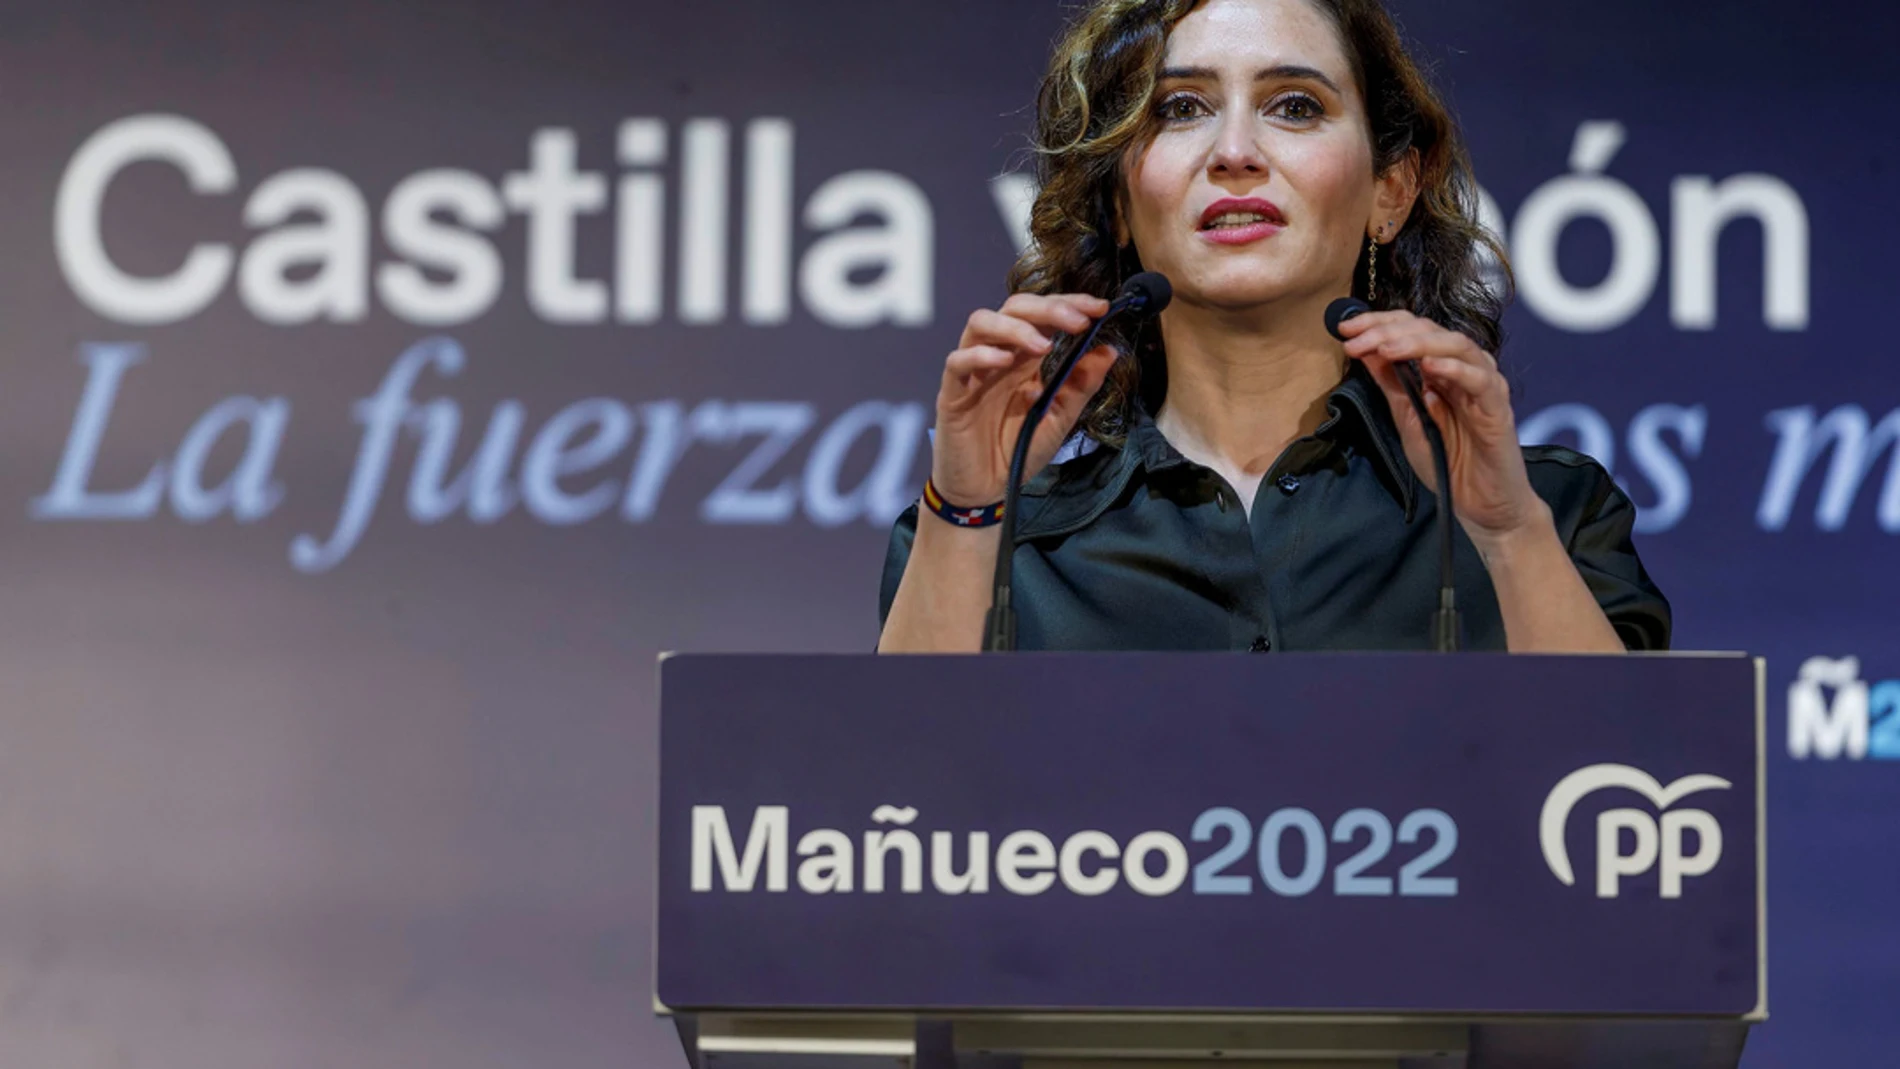 La presidenta de la comunidad de Madrid, Isabel Díaz Ayuso, durante el acto electoral para las elecciones autonómicas en Castilla y León celebrado este viernes en Burgos